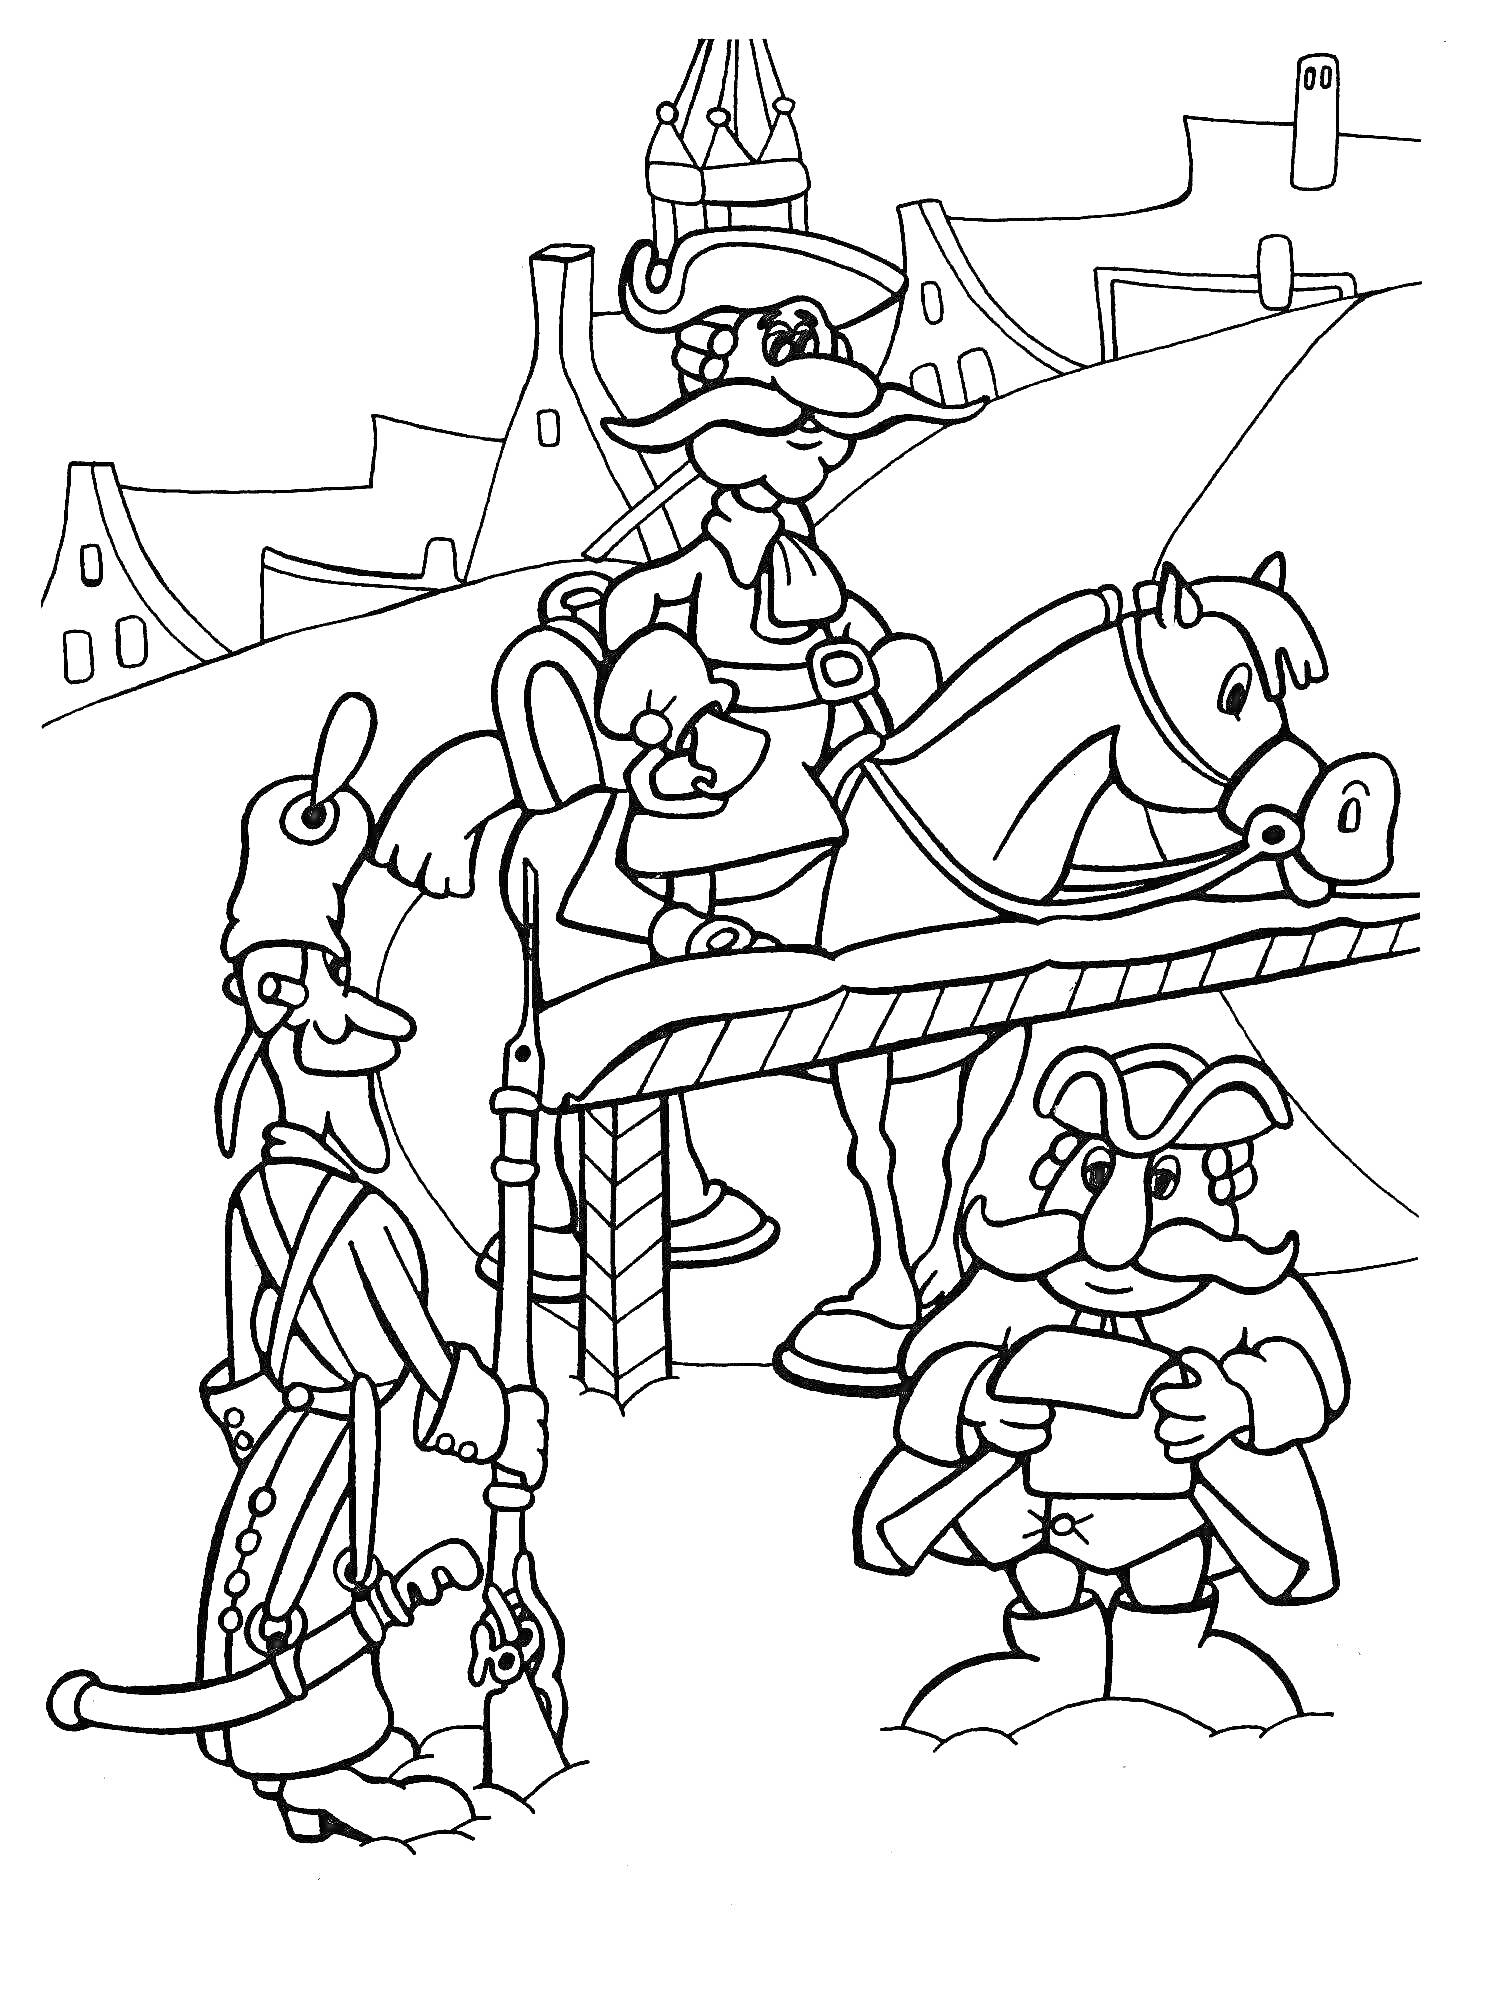 Раскраска Барон Мюнхгаузен на мосту с лошадью, два солдата и город на заднем плане